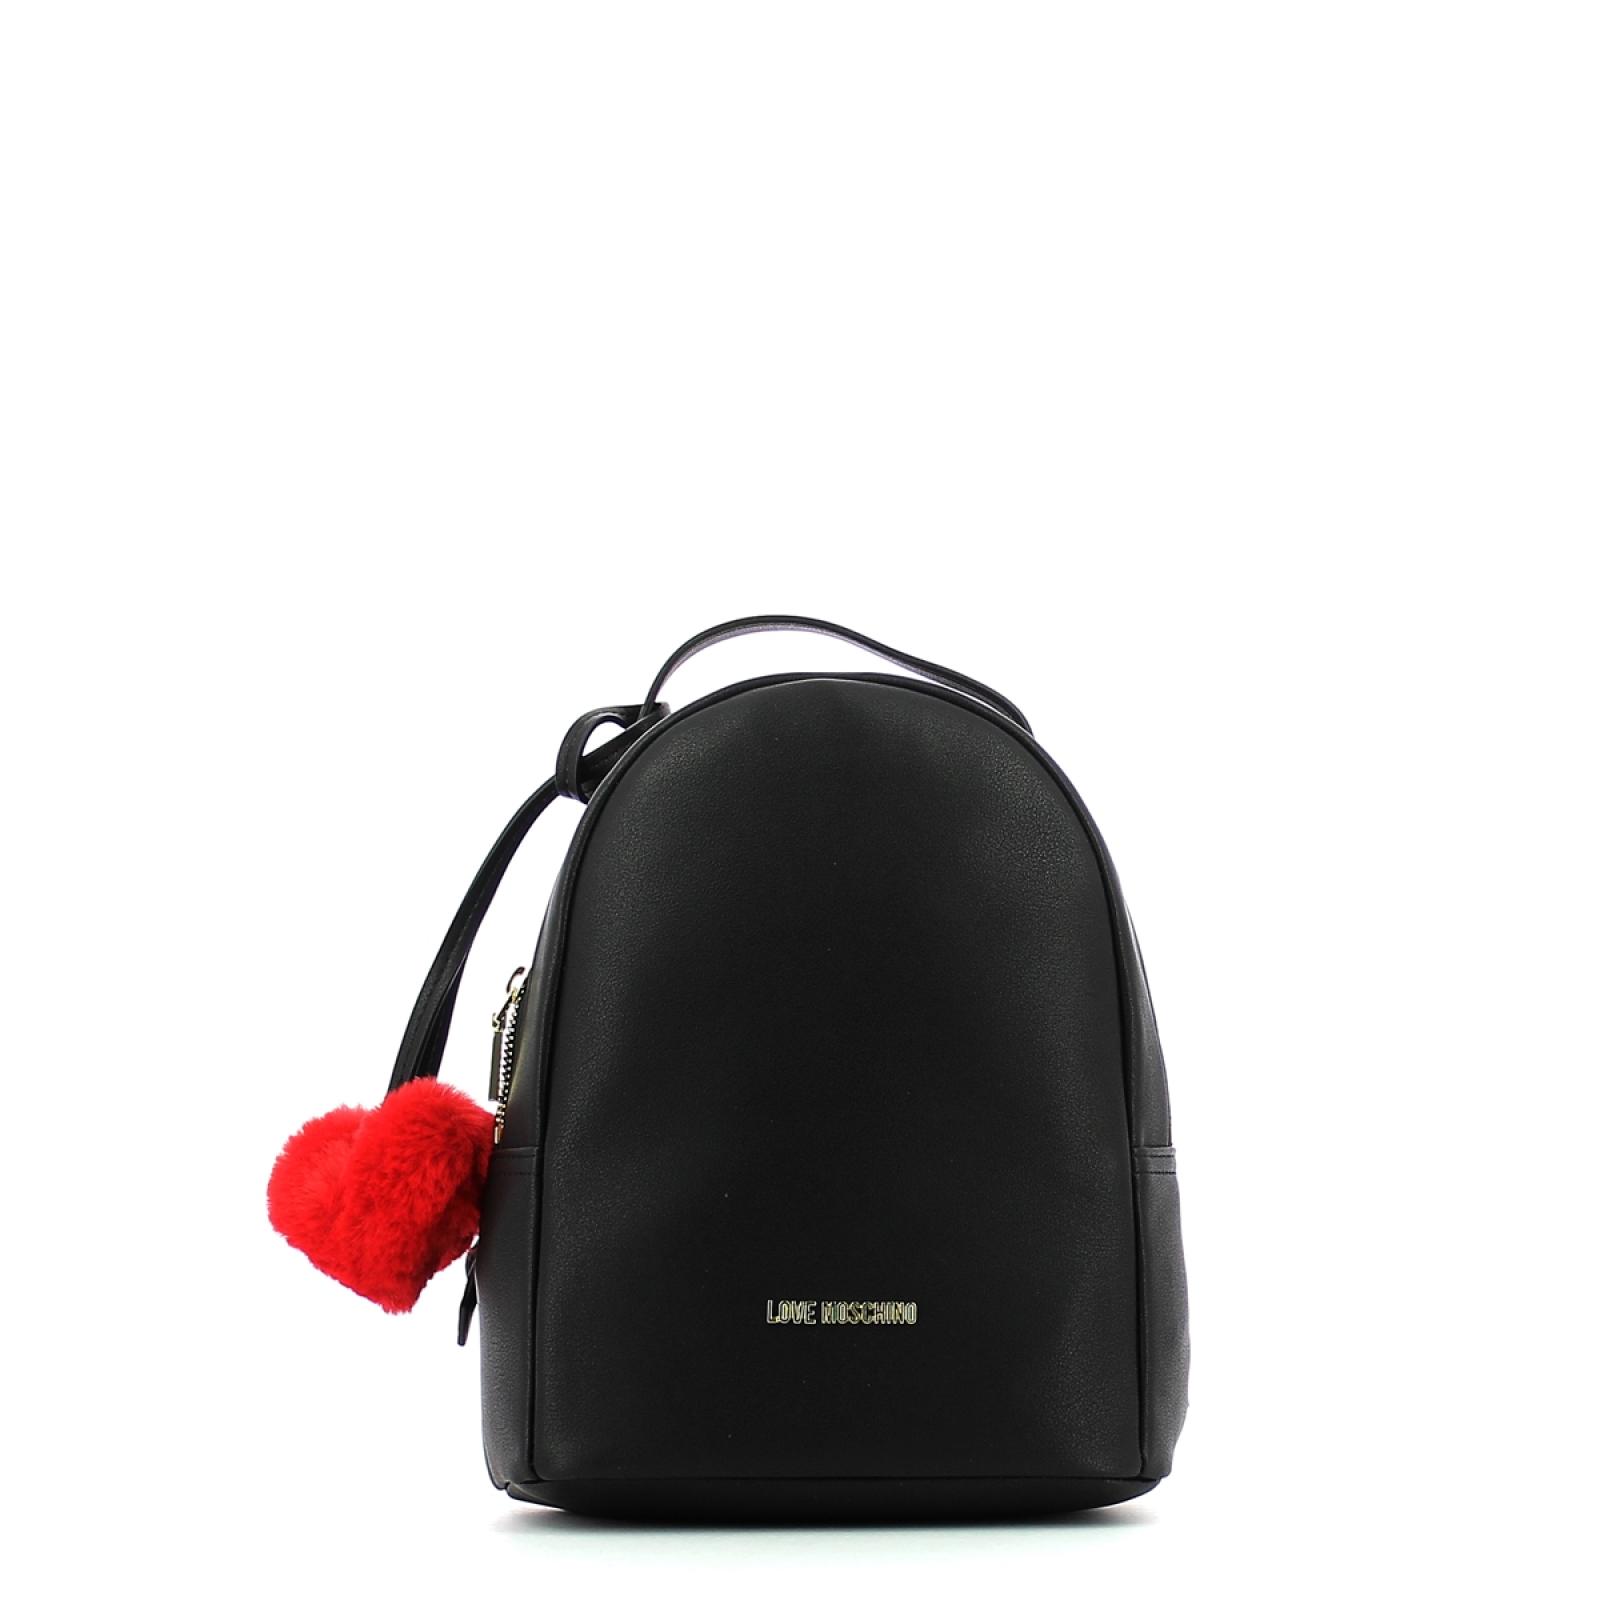 Backpack Pon Pon - 1